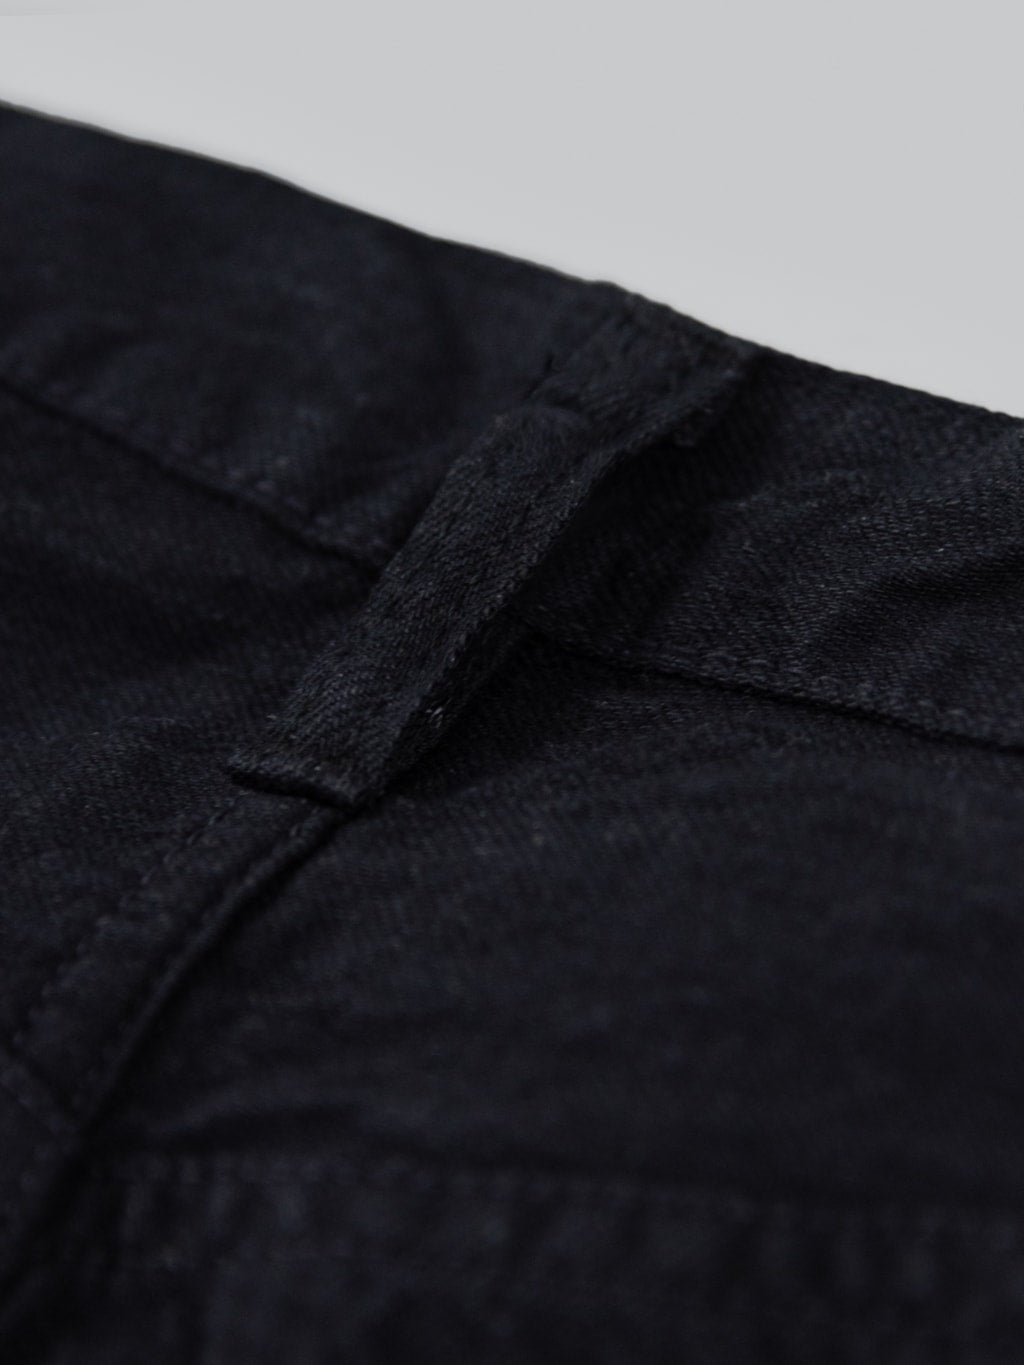 Sugar Cane Type III 13oz Black Denim Slim Jeans belt loop